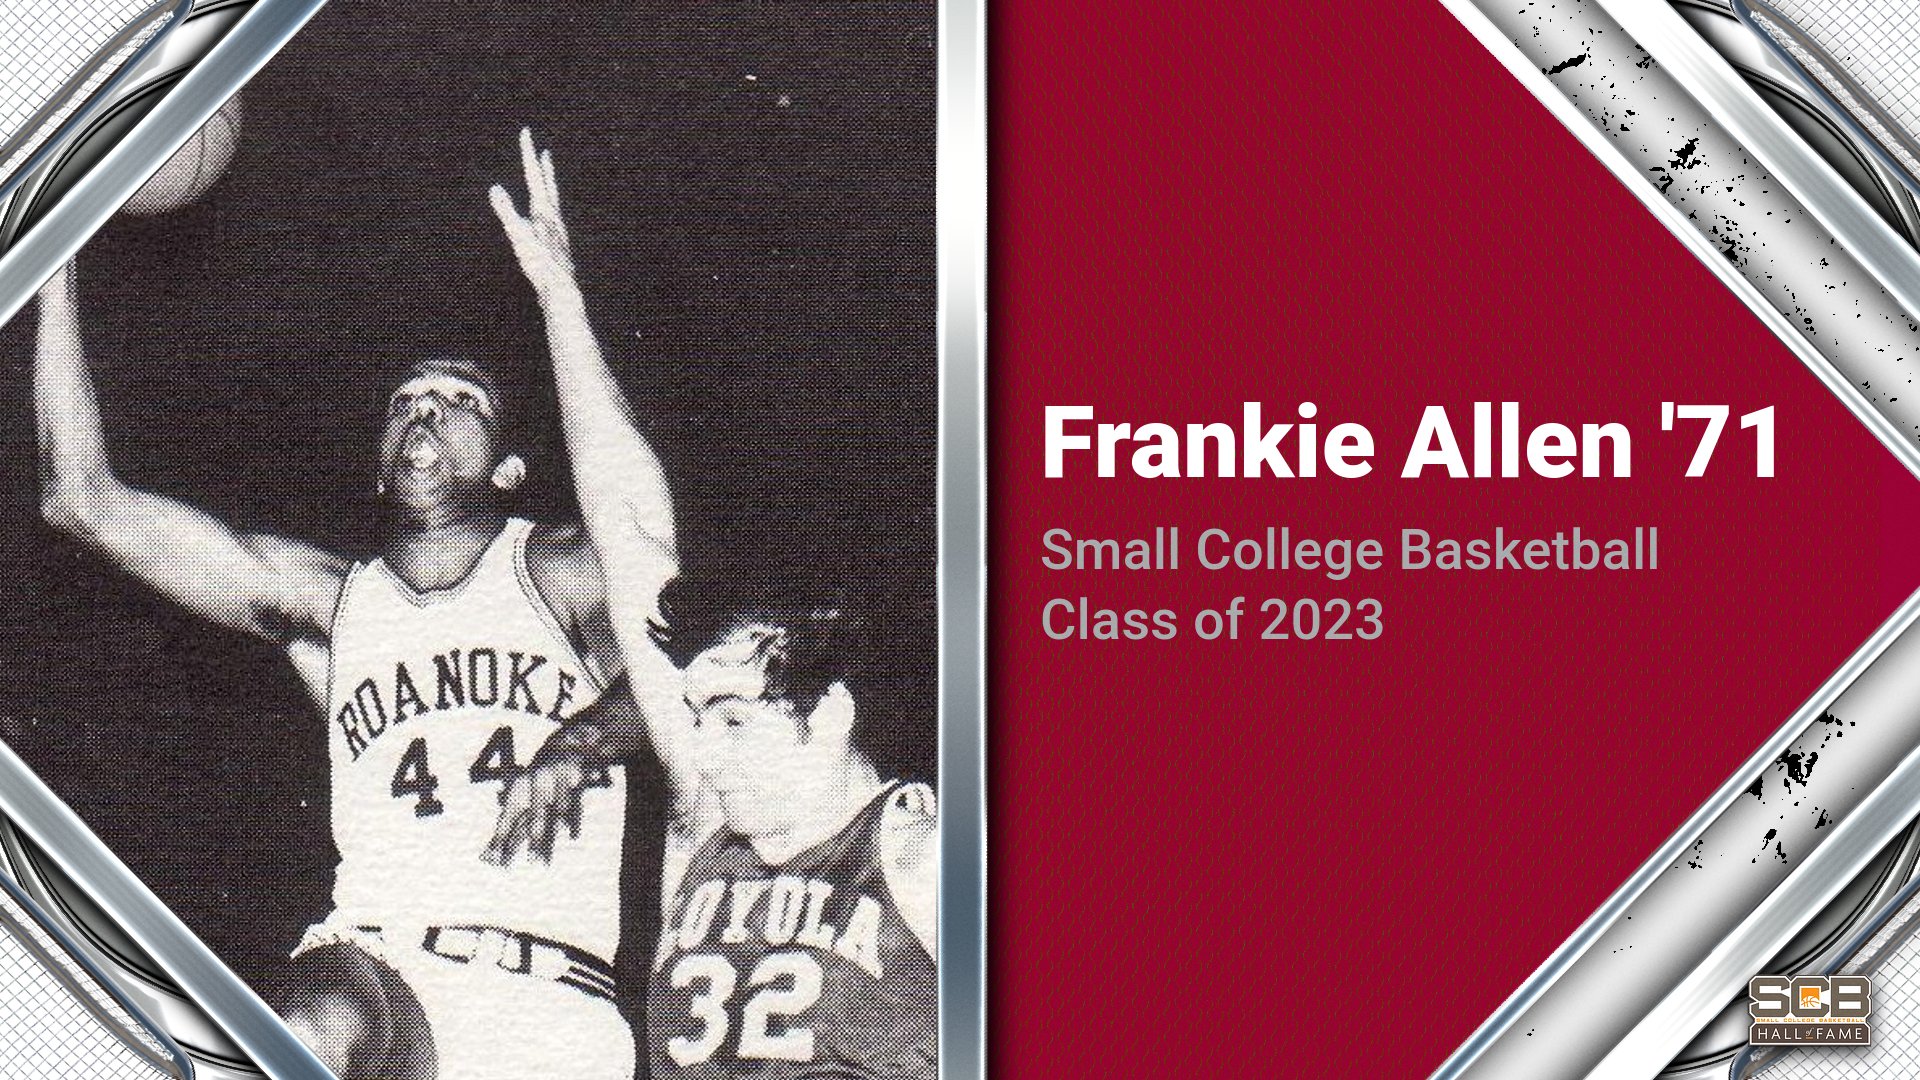 Frankie Allen '71